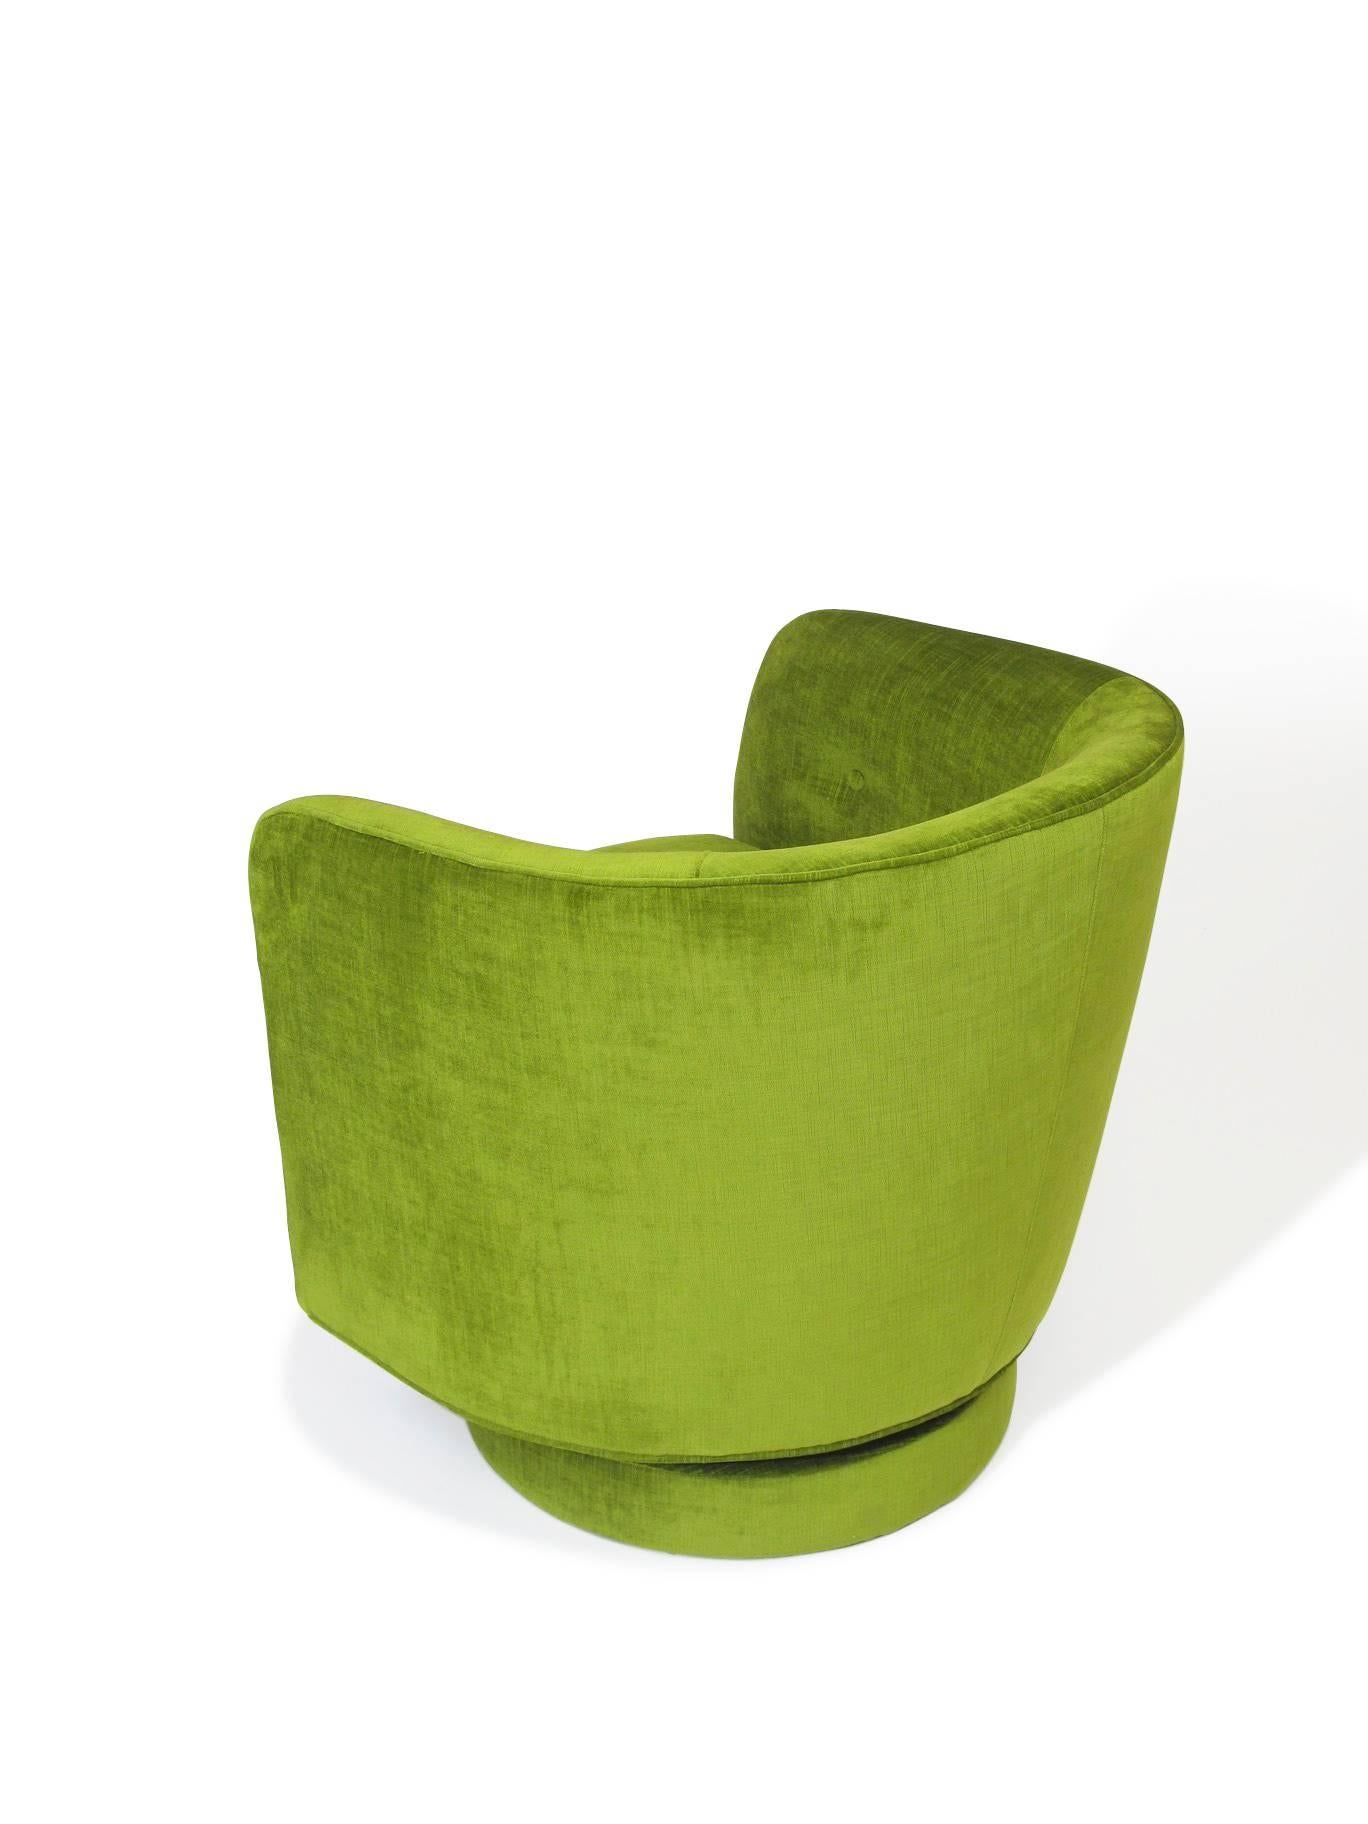 American Milo Baughman for Thayer Coggin Swivel and Tilt Lounge Chair in Green Velvet